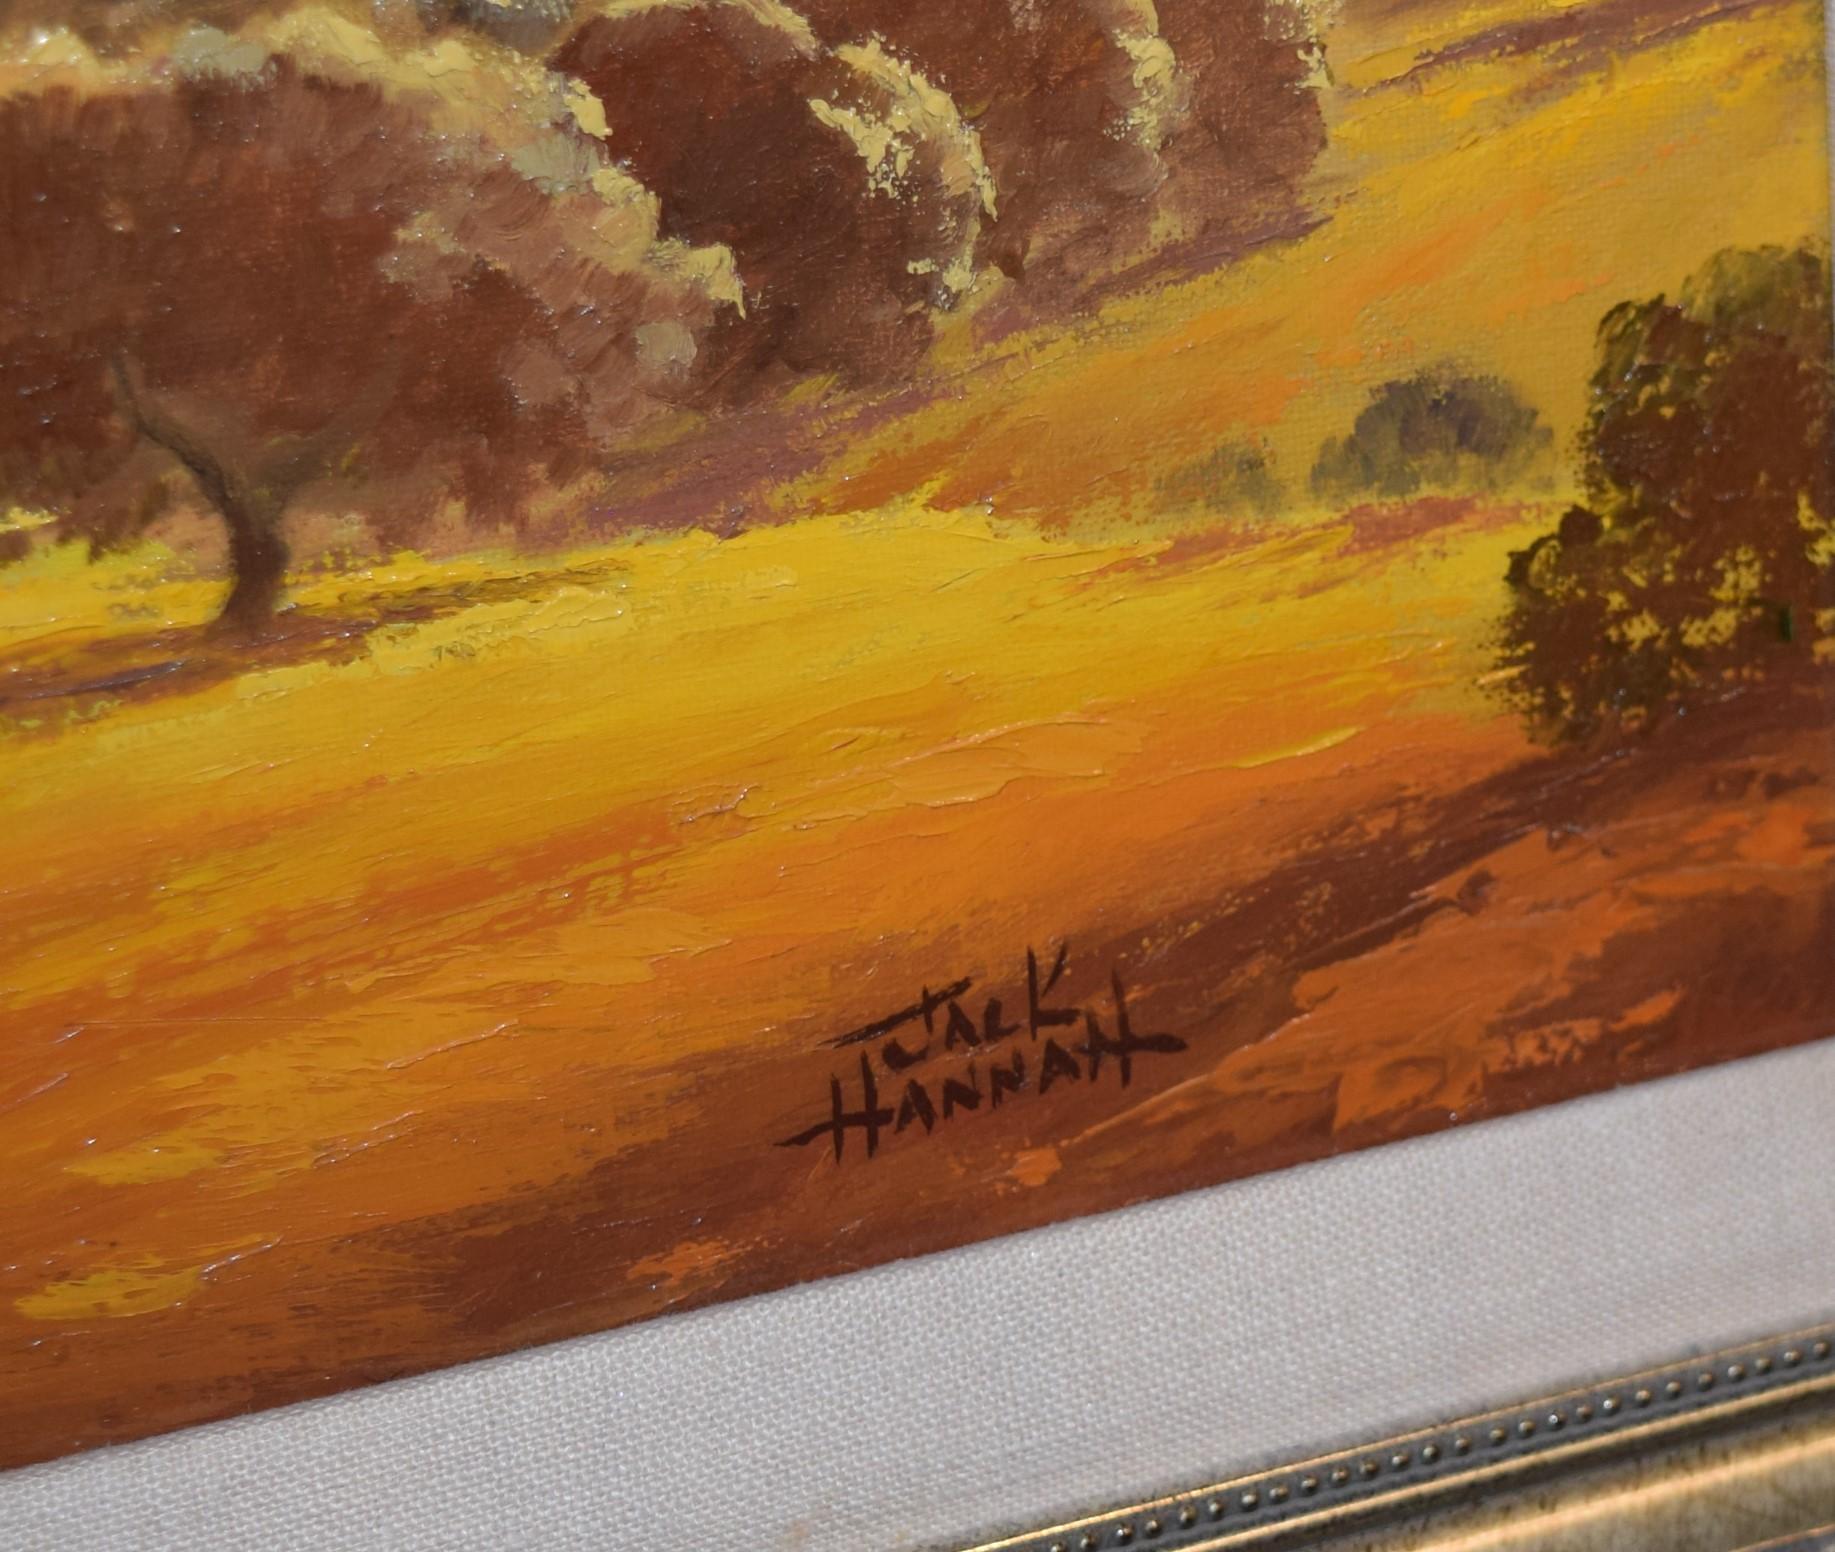 Jack Hannah (American, 1903-1994) "Autumn Hillside" Oil on Canvas